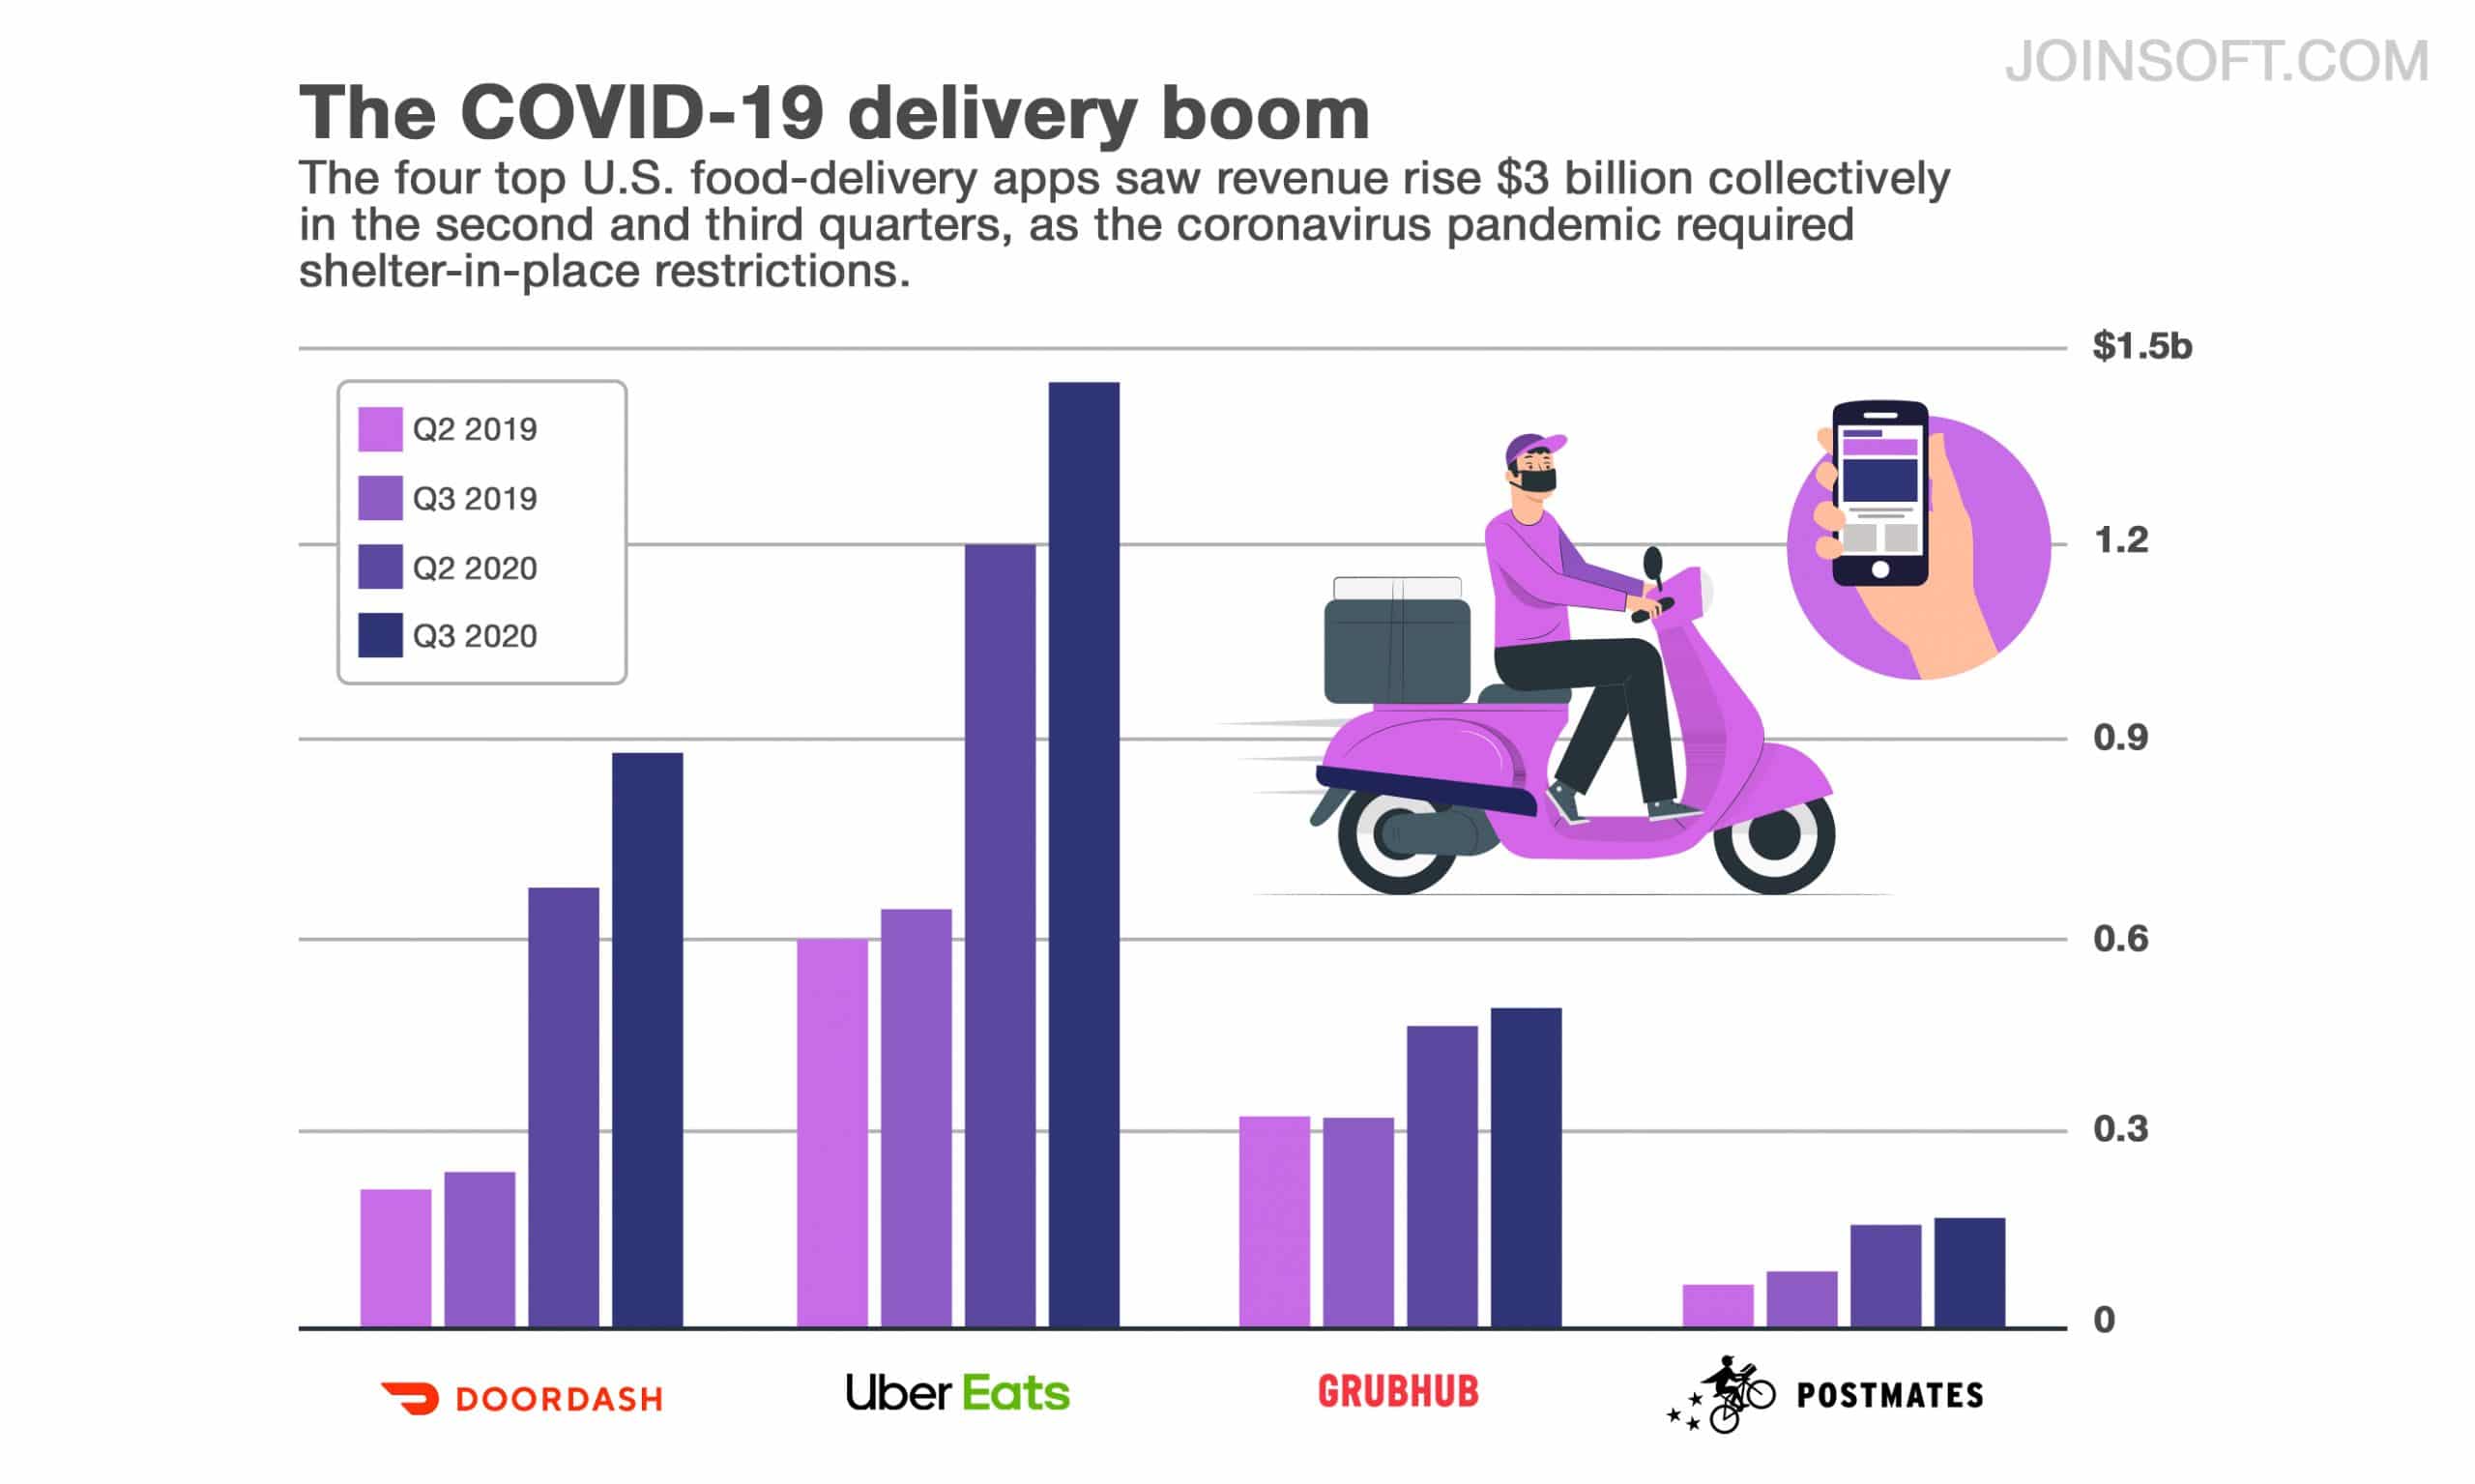 The covid-19 delivery boom